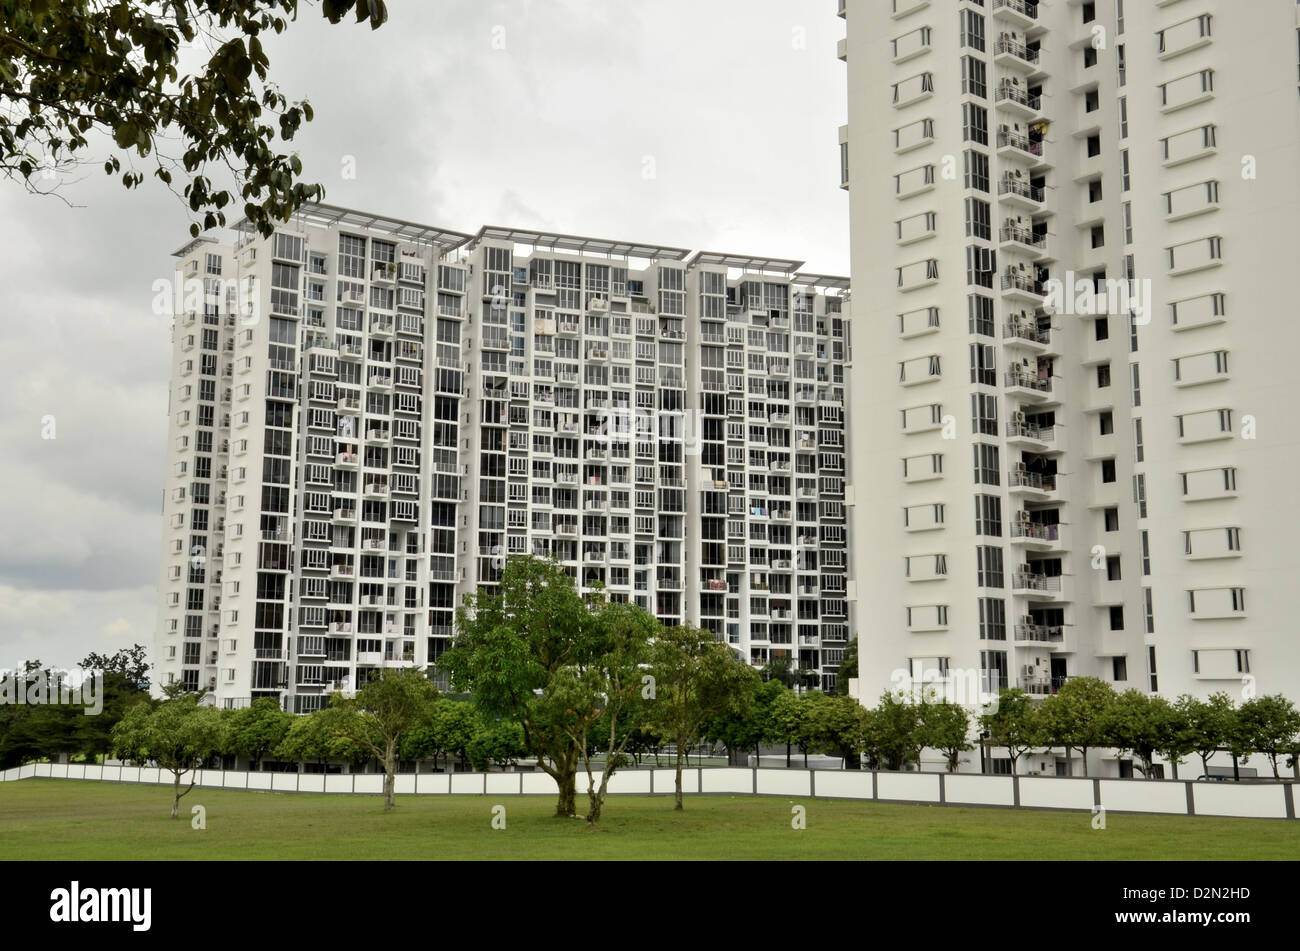 Un condominium moderne / maison d'habitation à Singapour. Remarque Les panneaux sur le toit des bâtiments. Banque D'Images